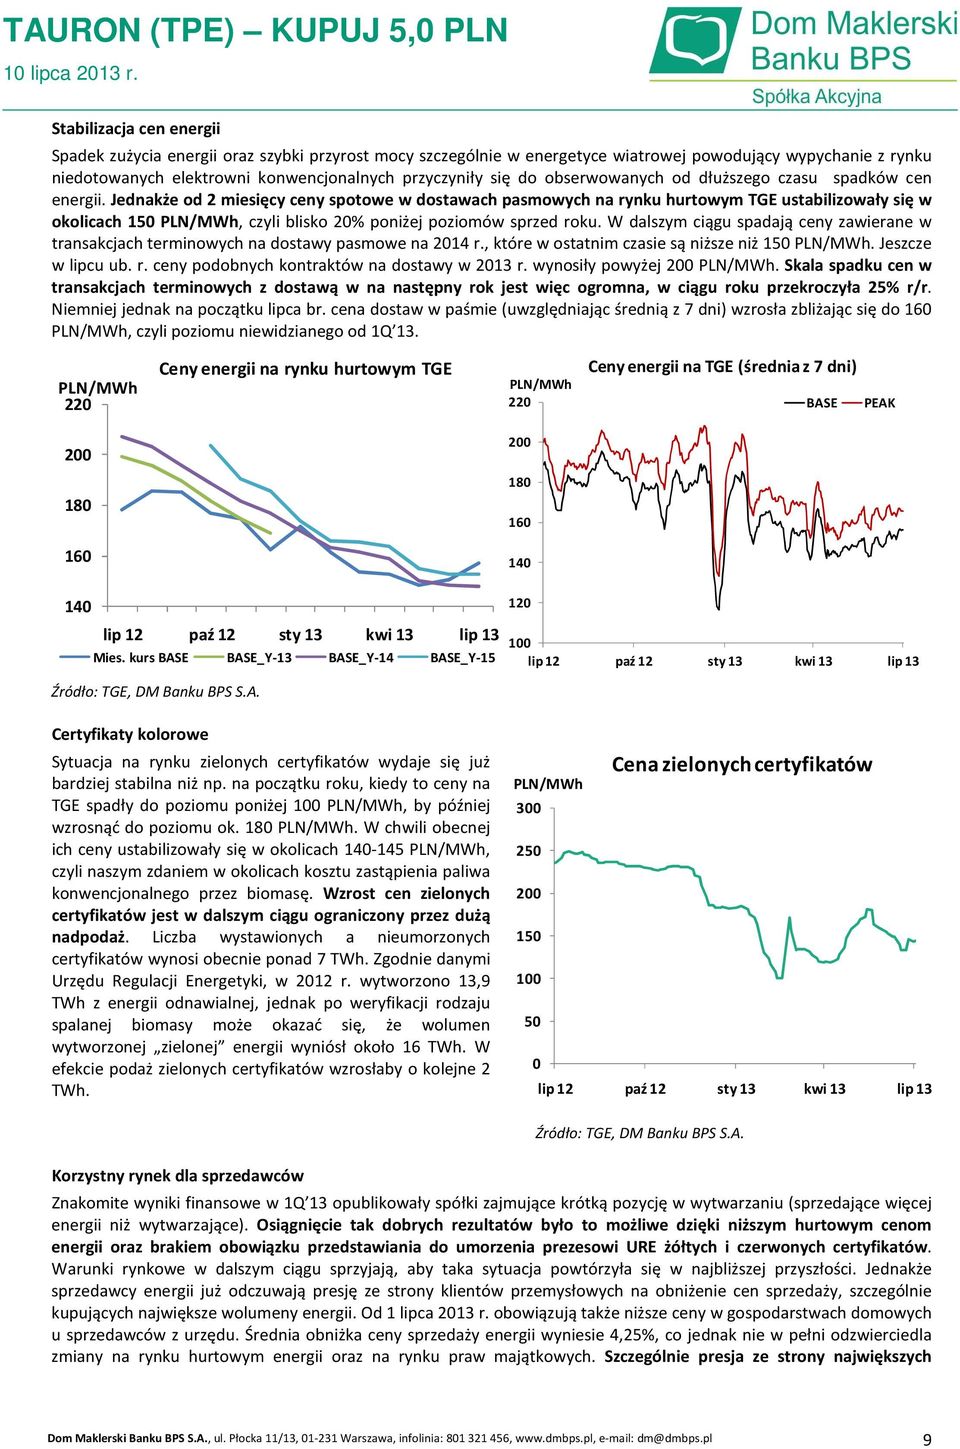 Jednakże od 2 miesięcy ceny spotowe w dostawach pasmowych na rynku hurtowym TGE ustabilizowały się w okolicach 150 PLN/MWh, czyli blisko 20% poniżej poziomów sprzed roku.